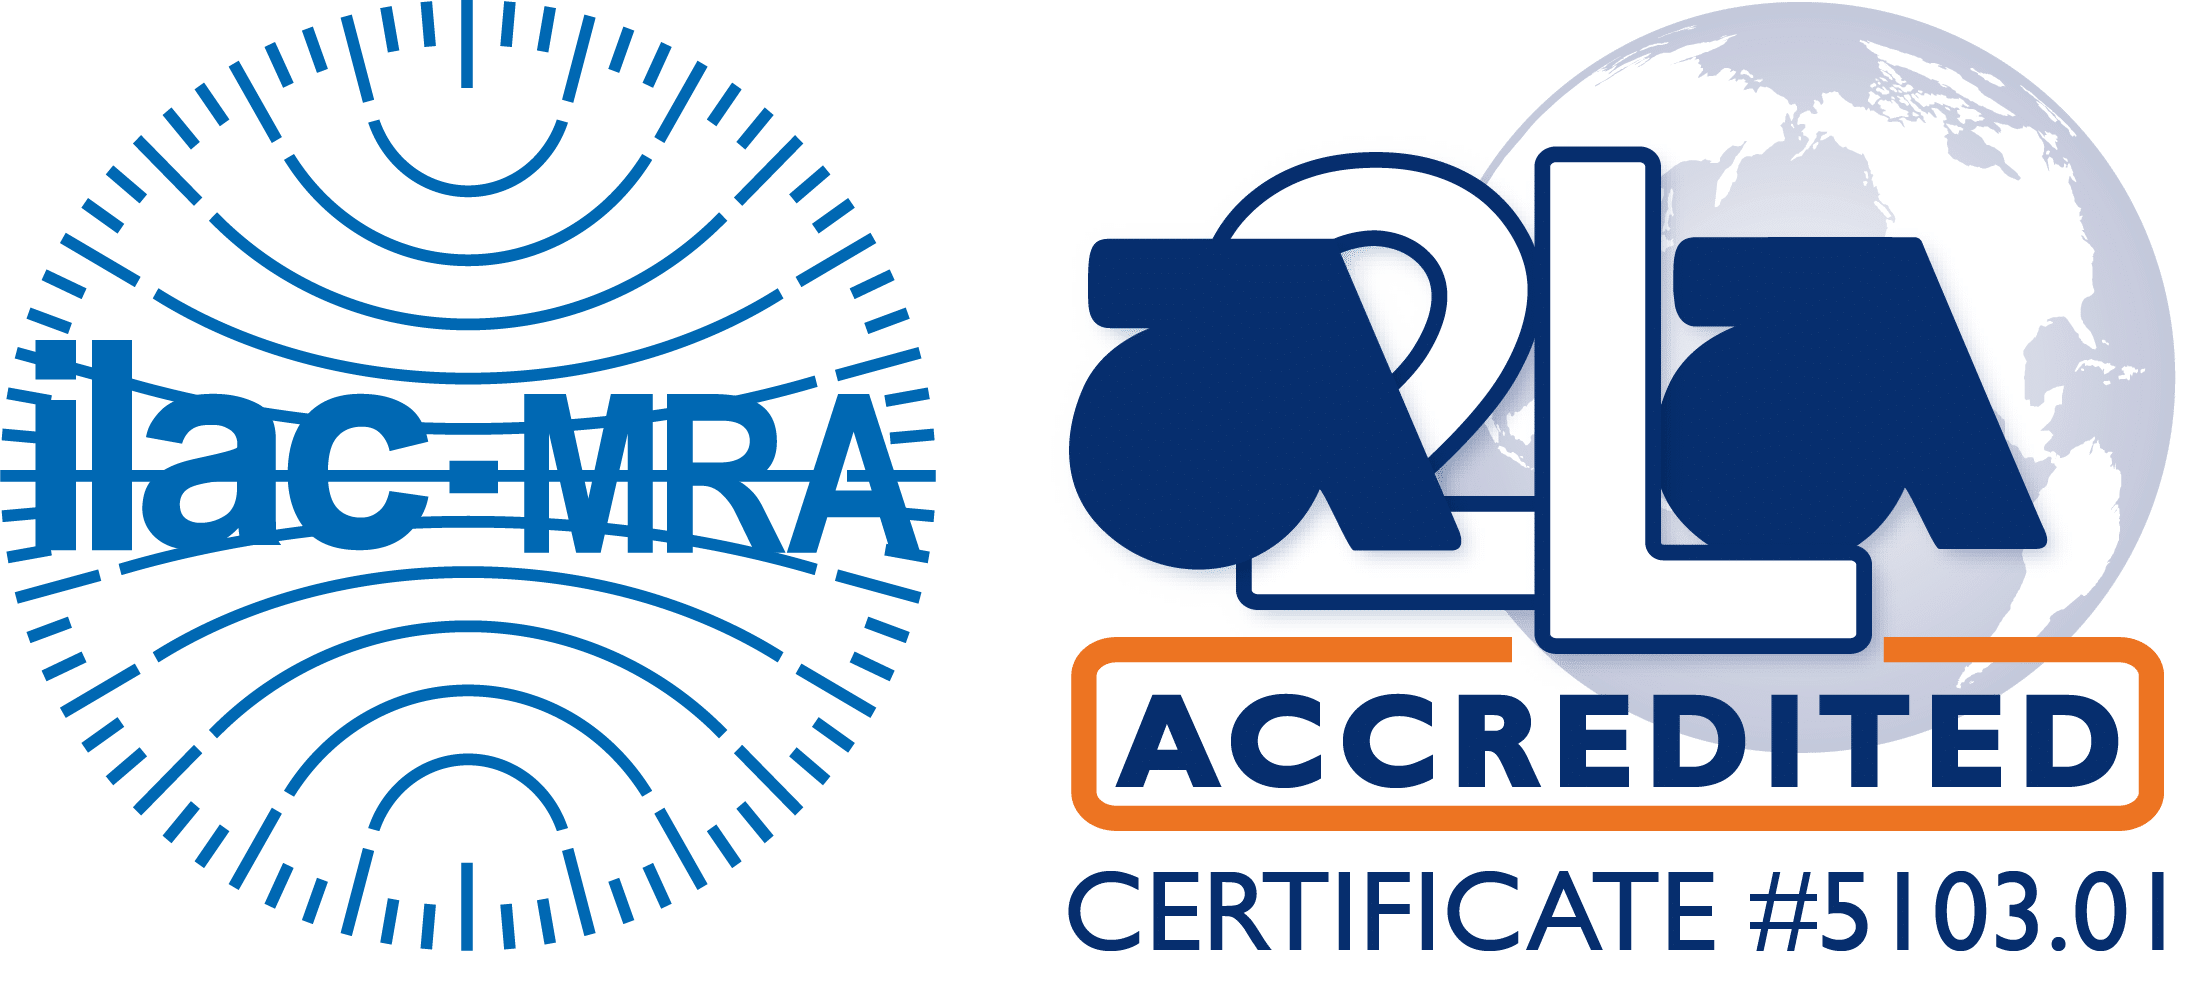 ILAC MRA-A2LA Accredited Symbol 5103.01 Houston Texas